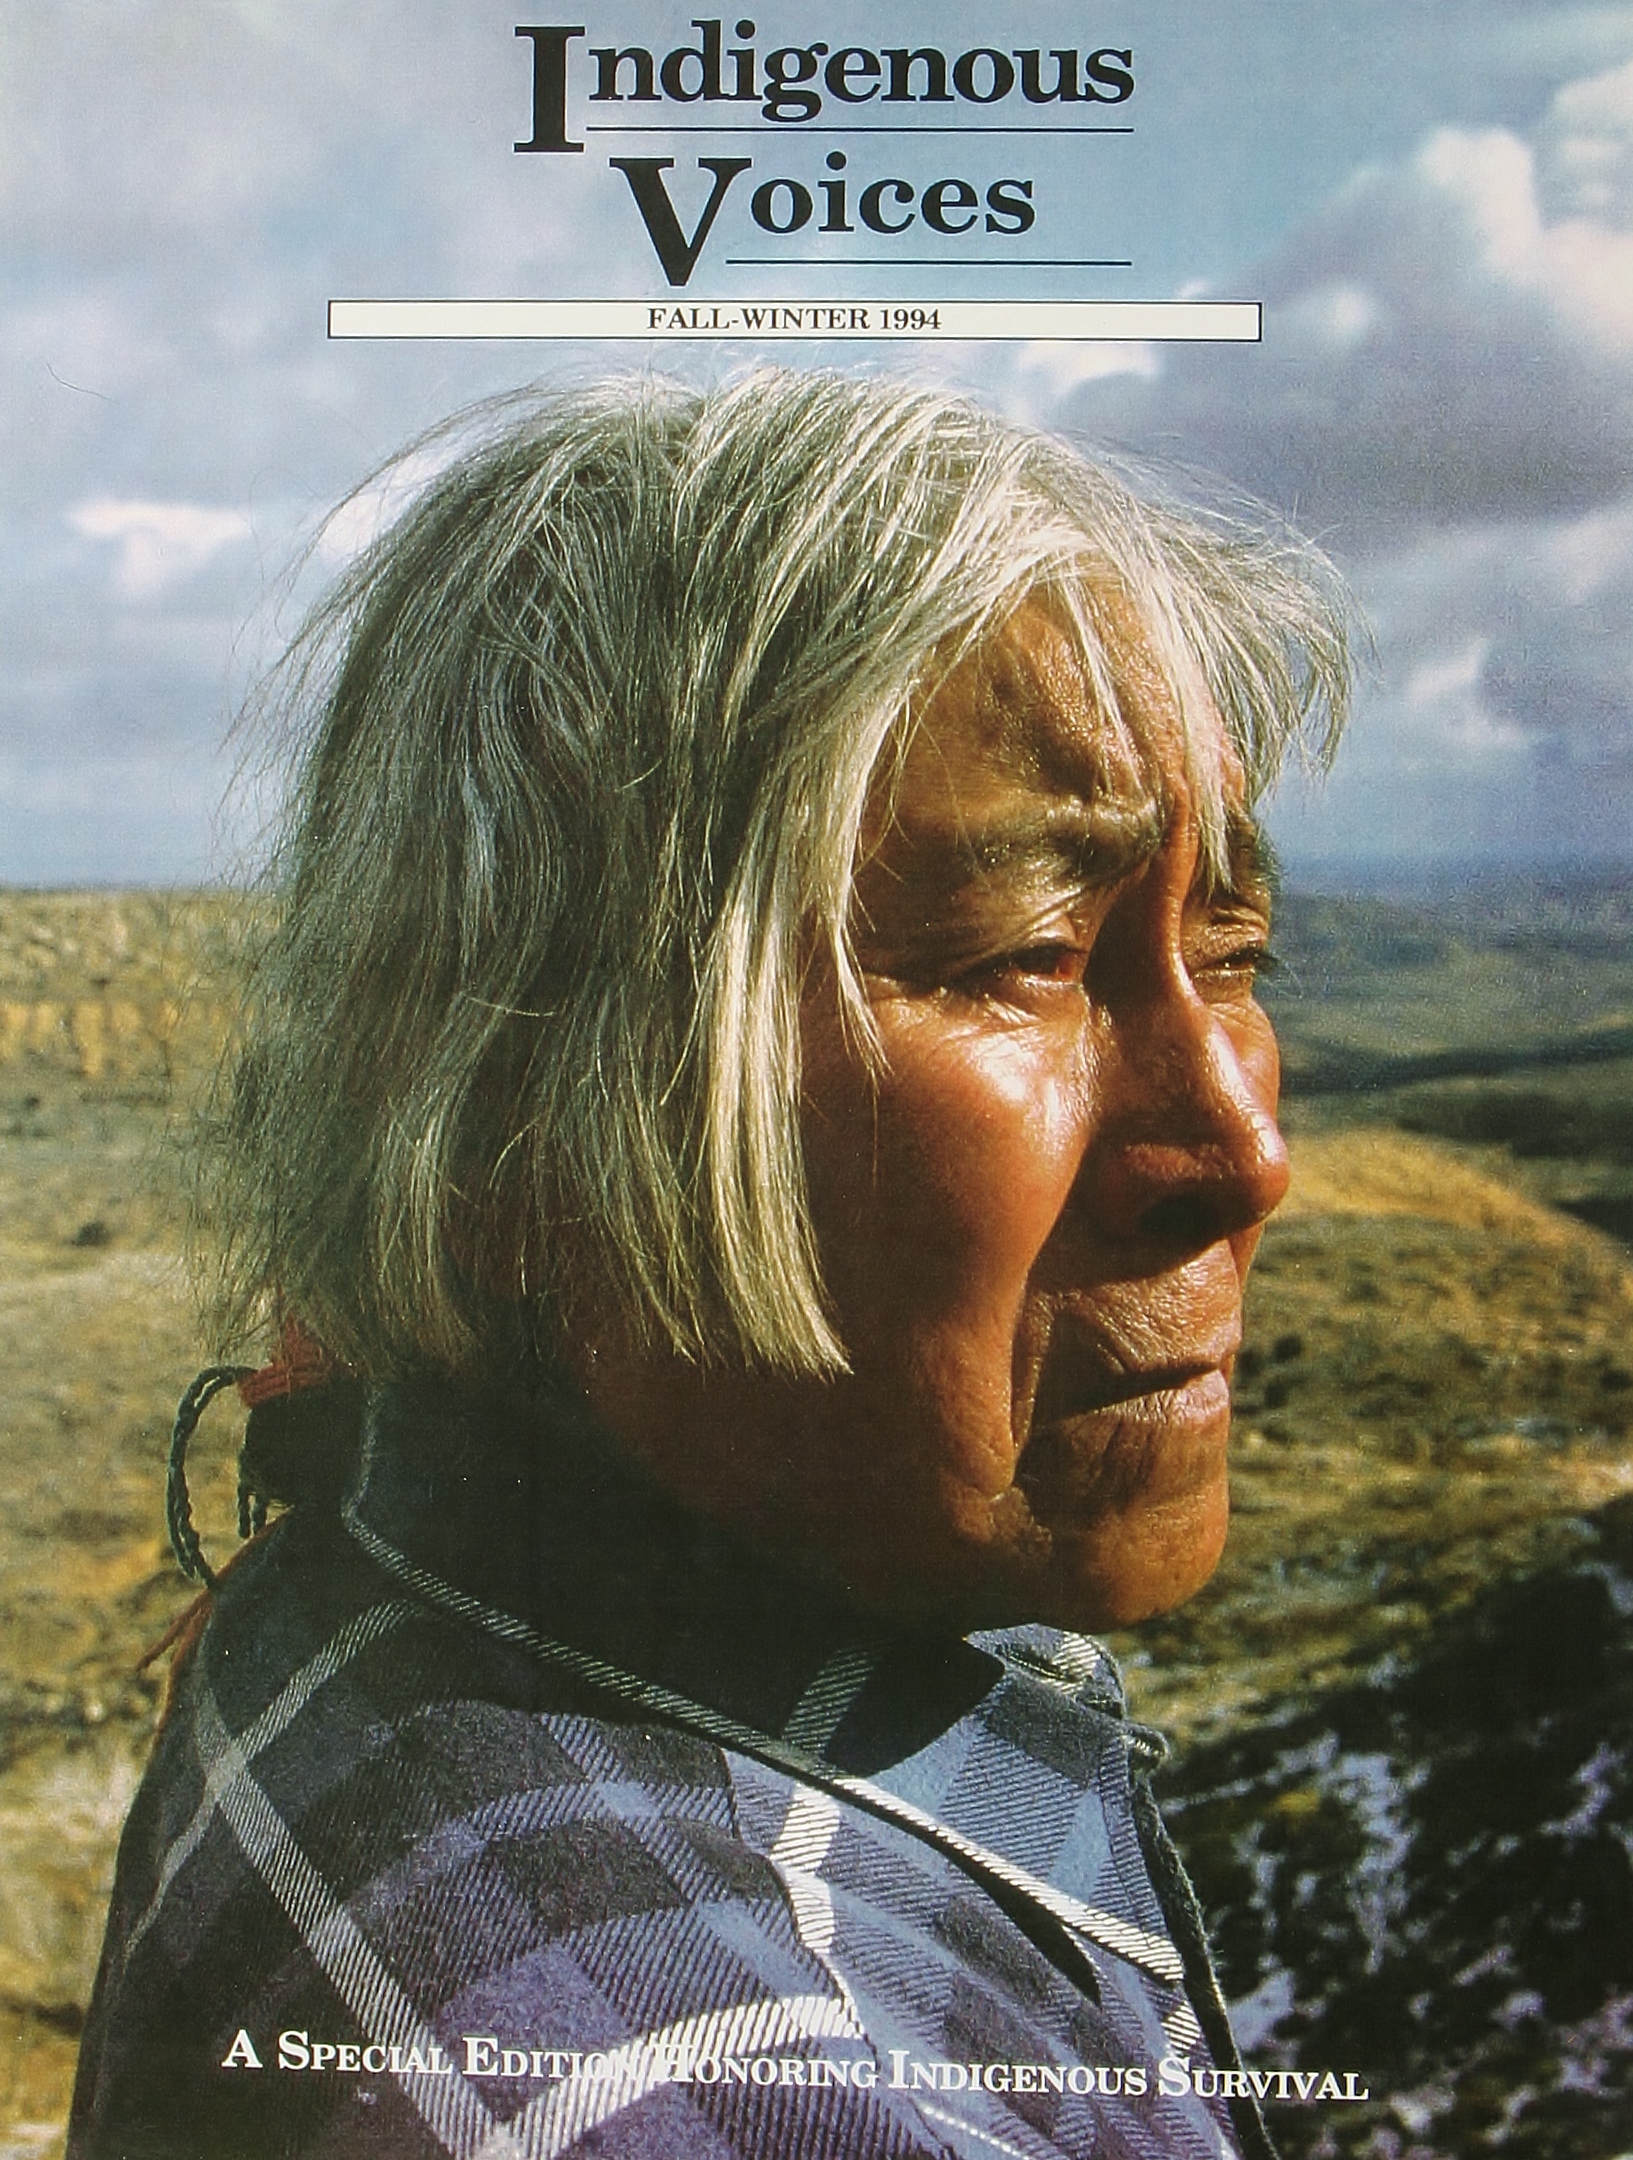 Hopi Elder Martin Gashwasheoma, Hotevilla, Arizona on the Hopi Reservation.